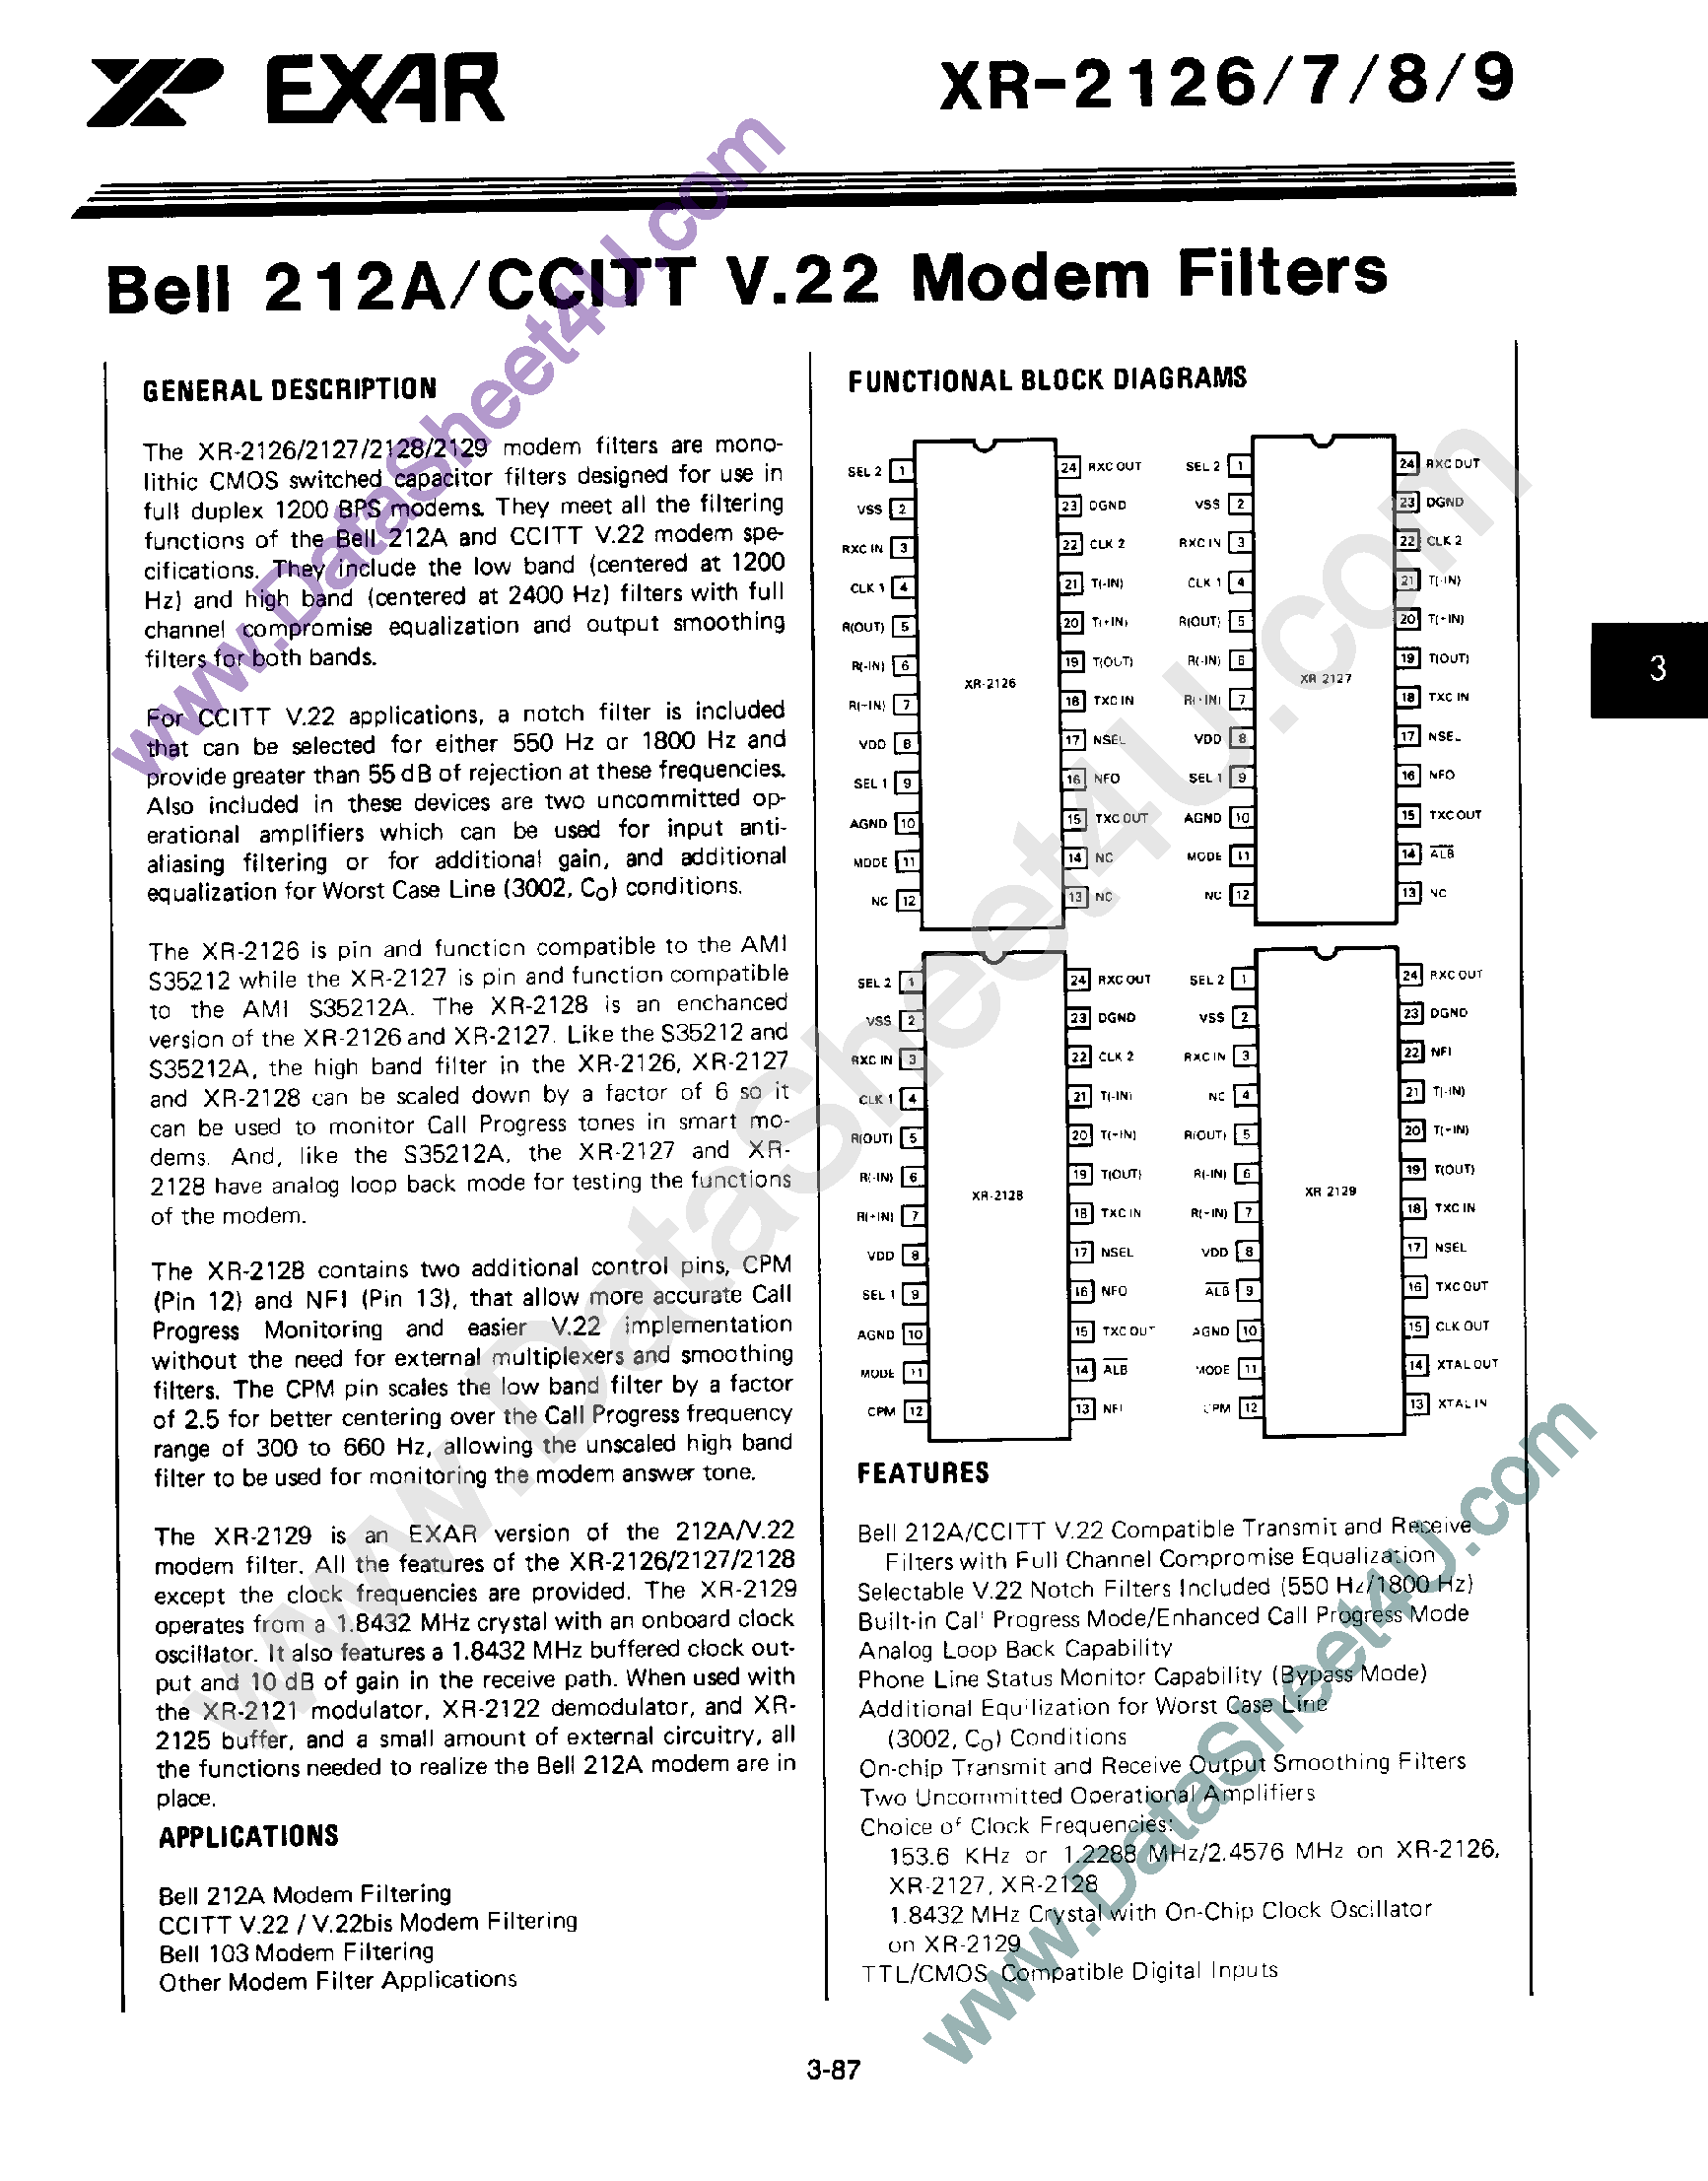 Datasheet XR-2129 - Bell 212A / CCITT V.22 Modem Filters page 1